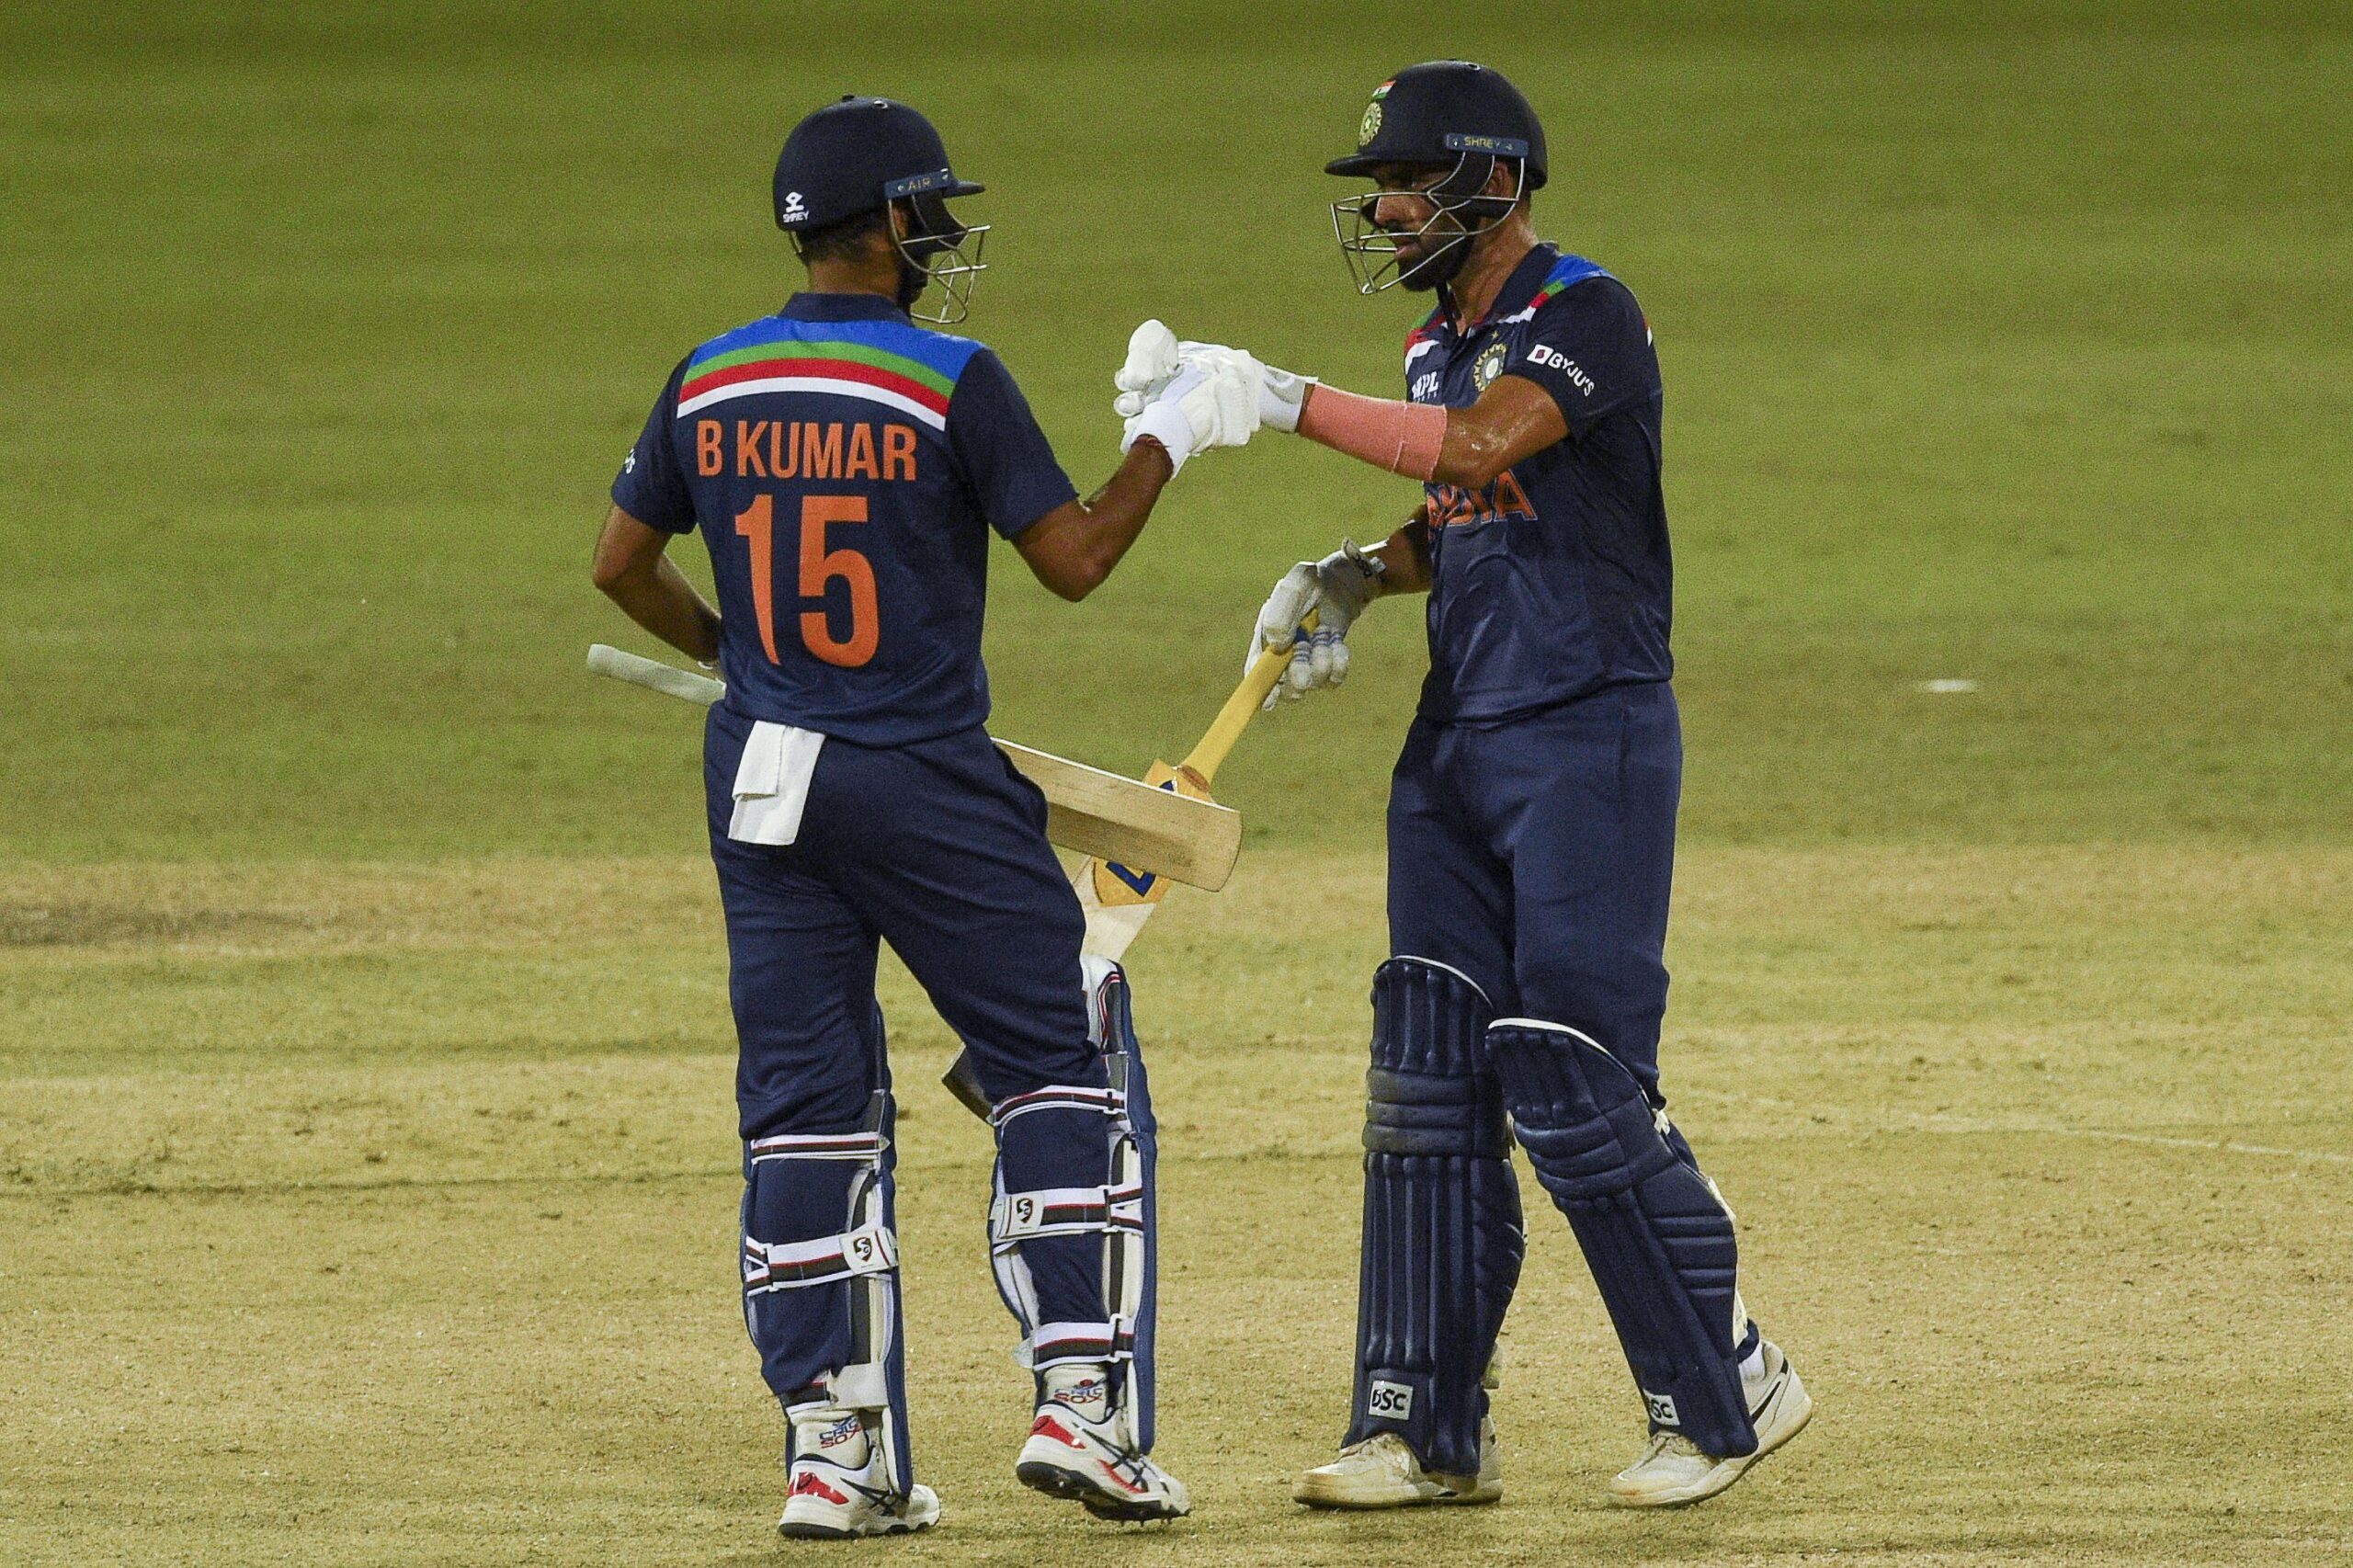 IND vs SL: श्रीलंका के खिलाफ दूसरा वनडे जीतने में महेंद्र सिंह धोनी ने निभाई है अहम भूमिका, जानिए कैसे की टीम इंडिया की मदद 1